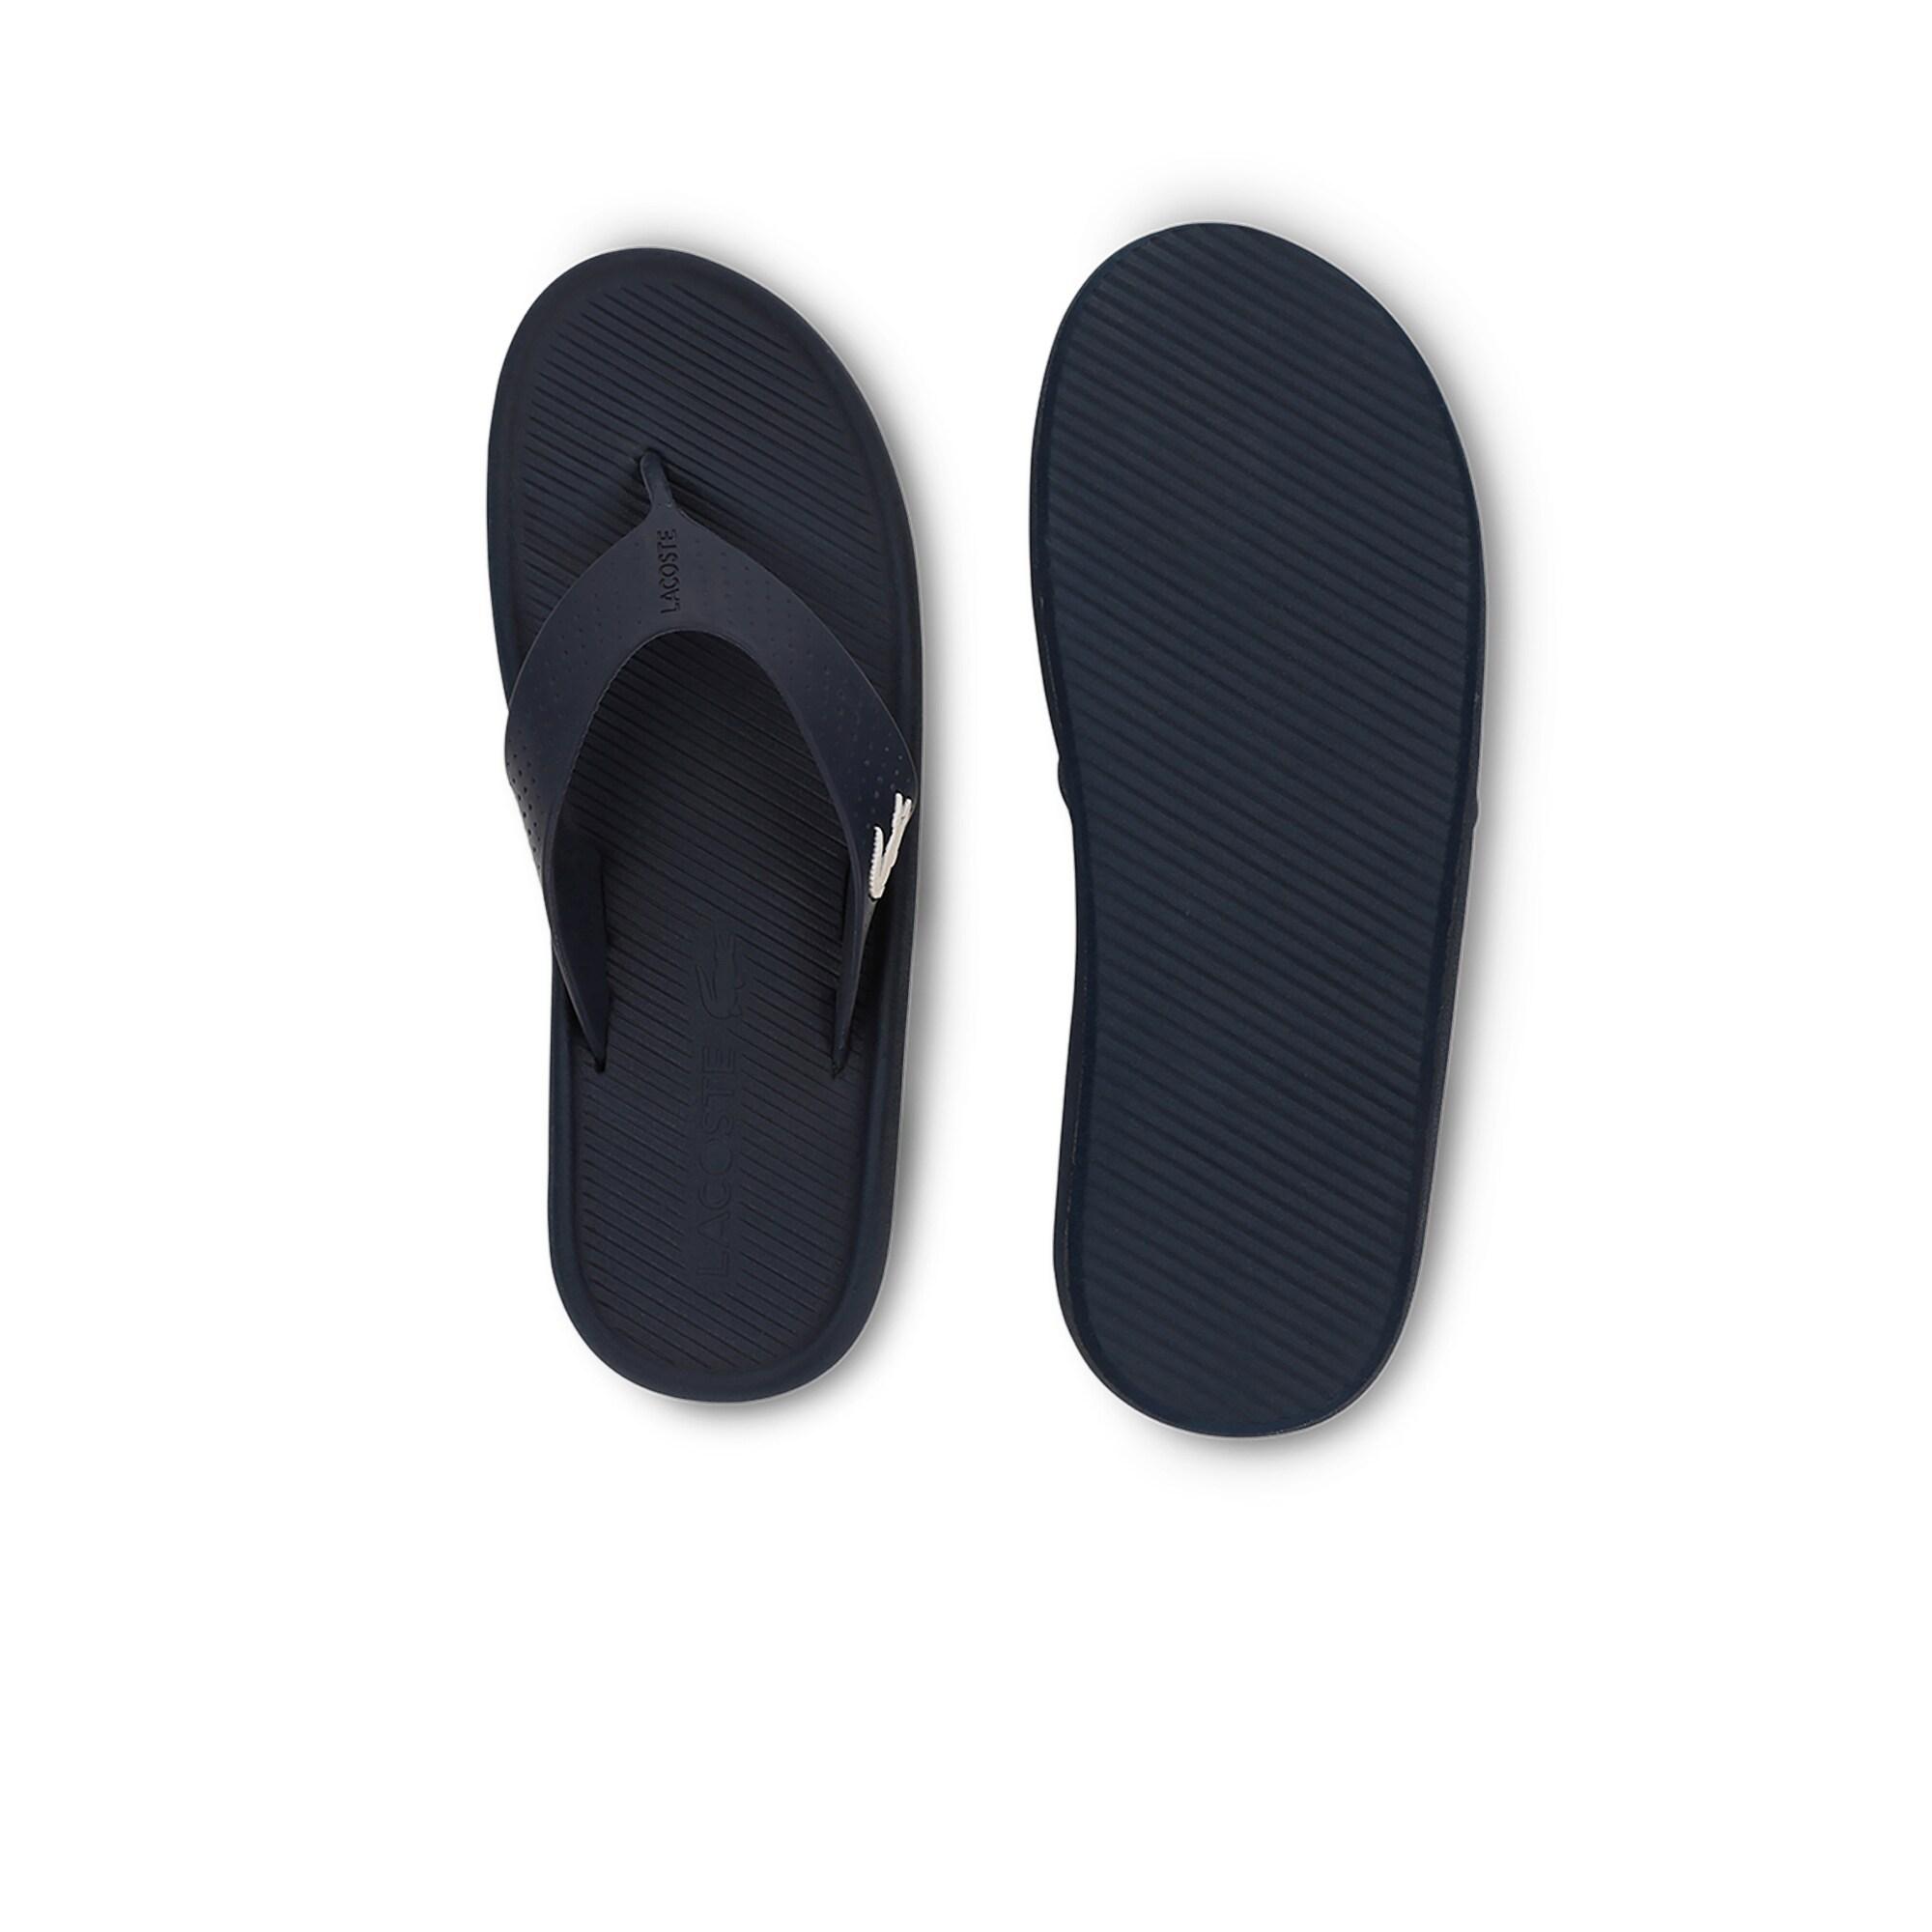 Lacoste Croco Sandal 219 1 Cma Erkek Lacivert - Beyaz Terlik. 6